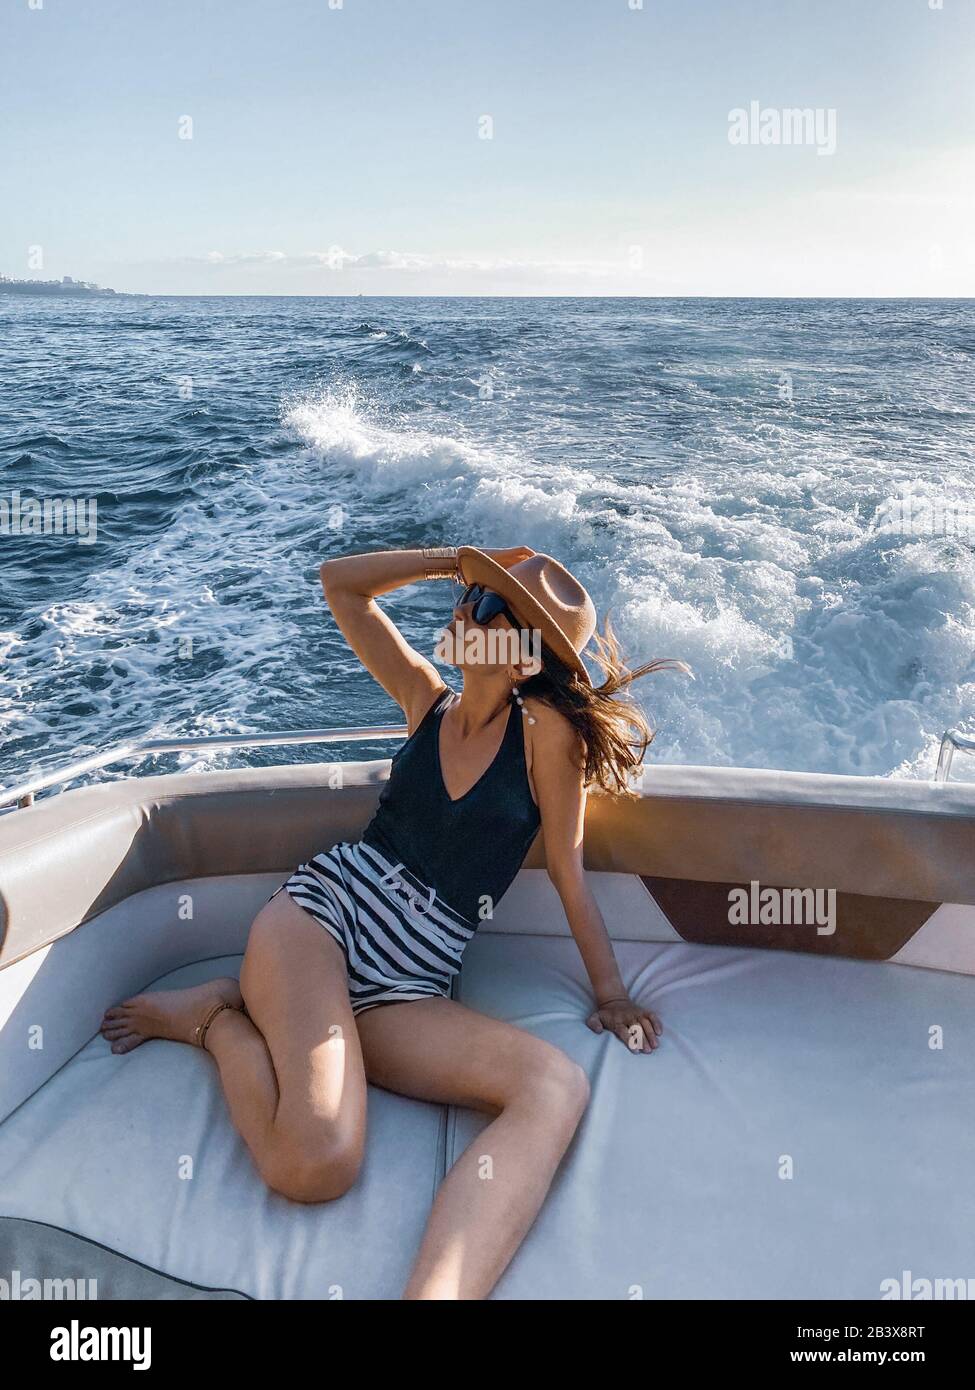 Donna rilassata che gode di un viaggio in oceano, navigando sullo yacht di lusso vicino alla splendida costa rocciosa. Immagine realizzata sul telefono cellulare Foto Stock